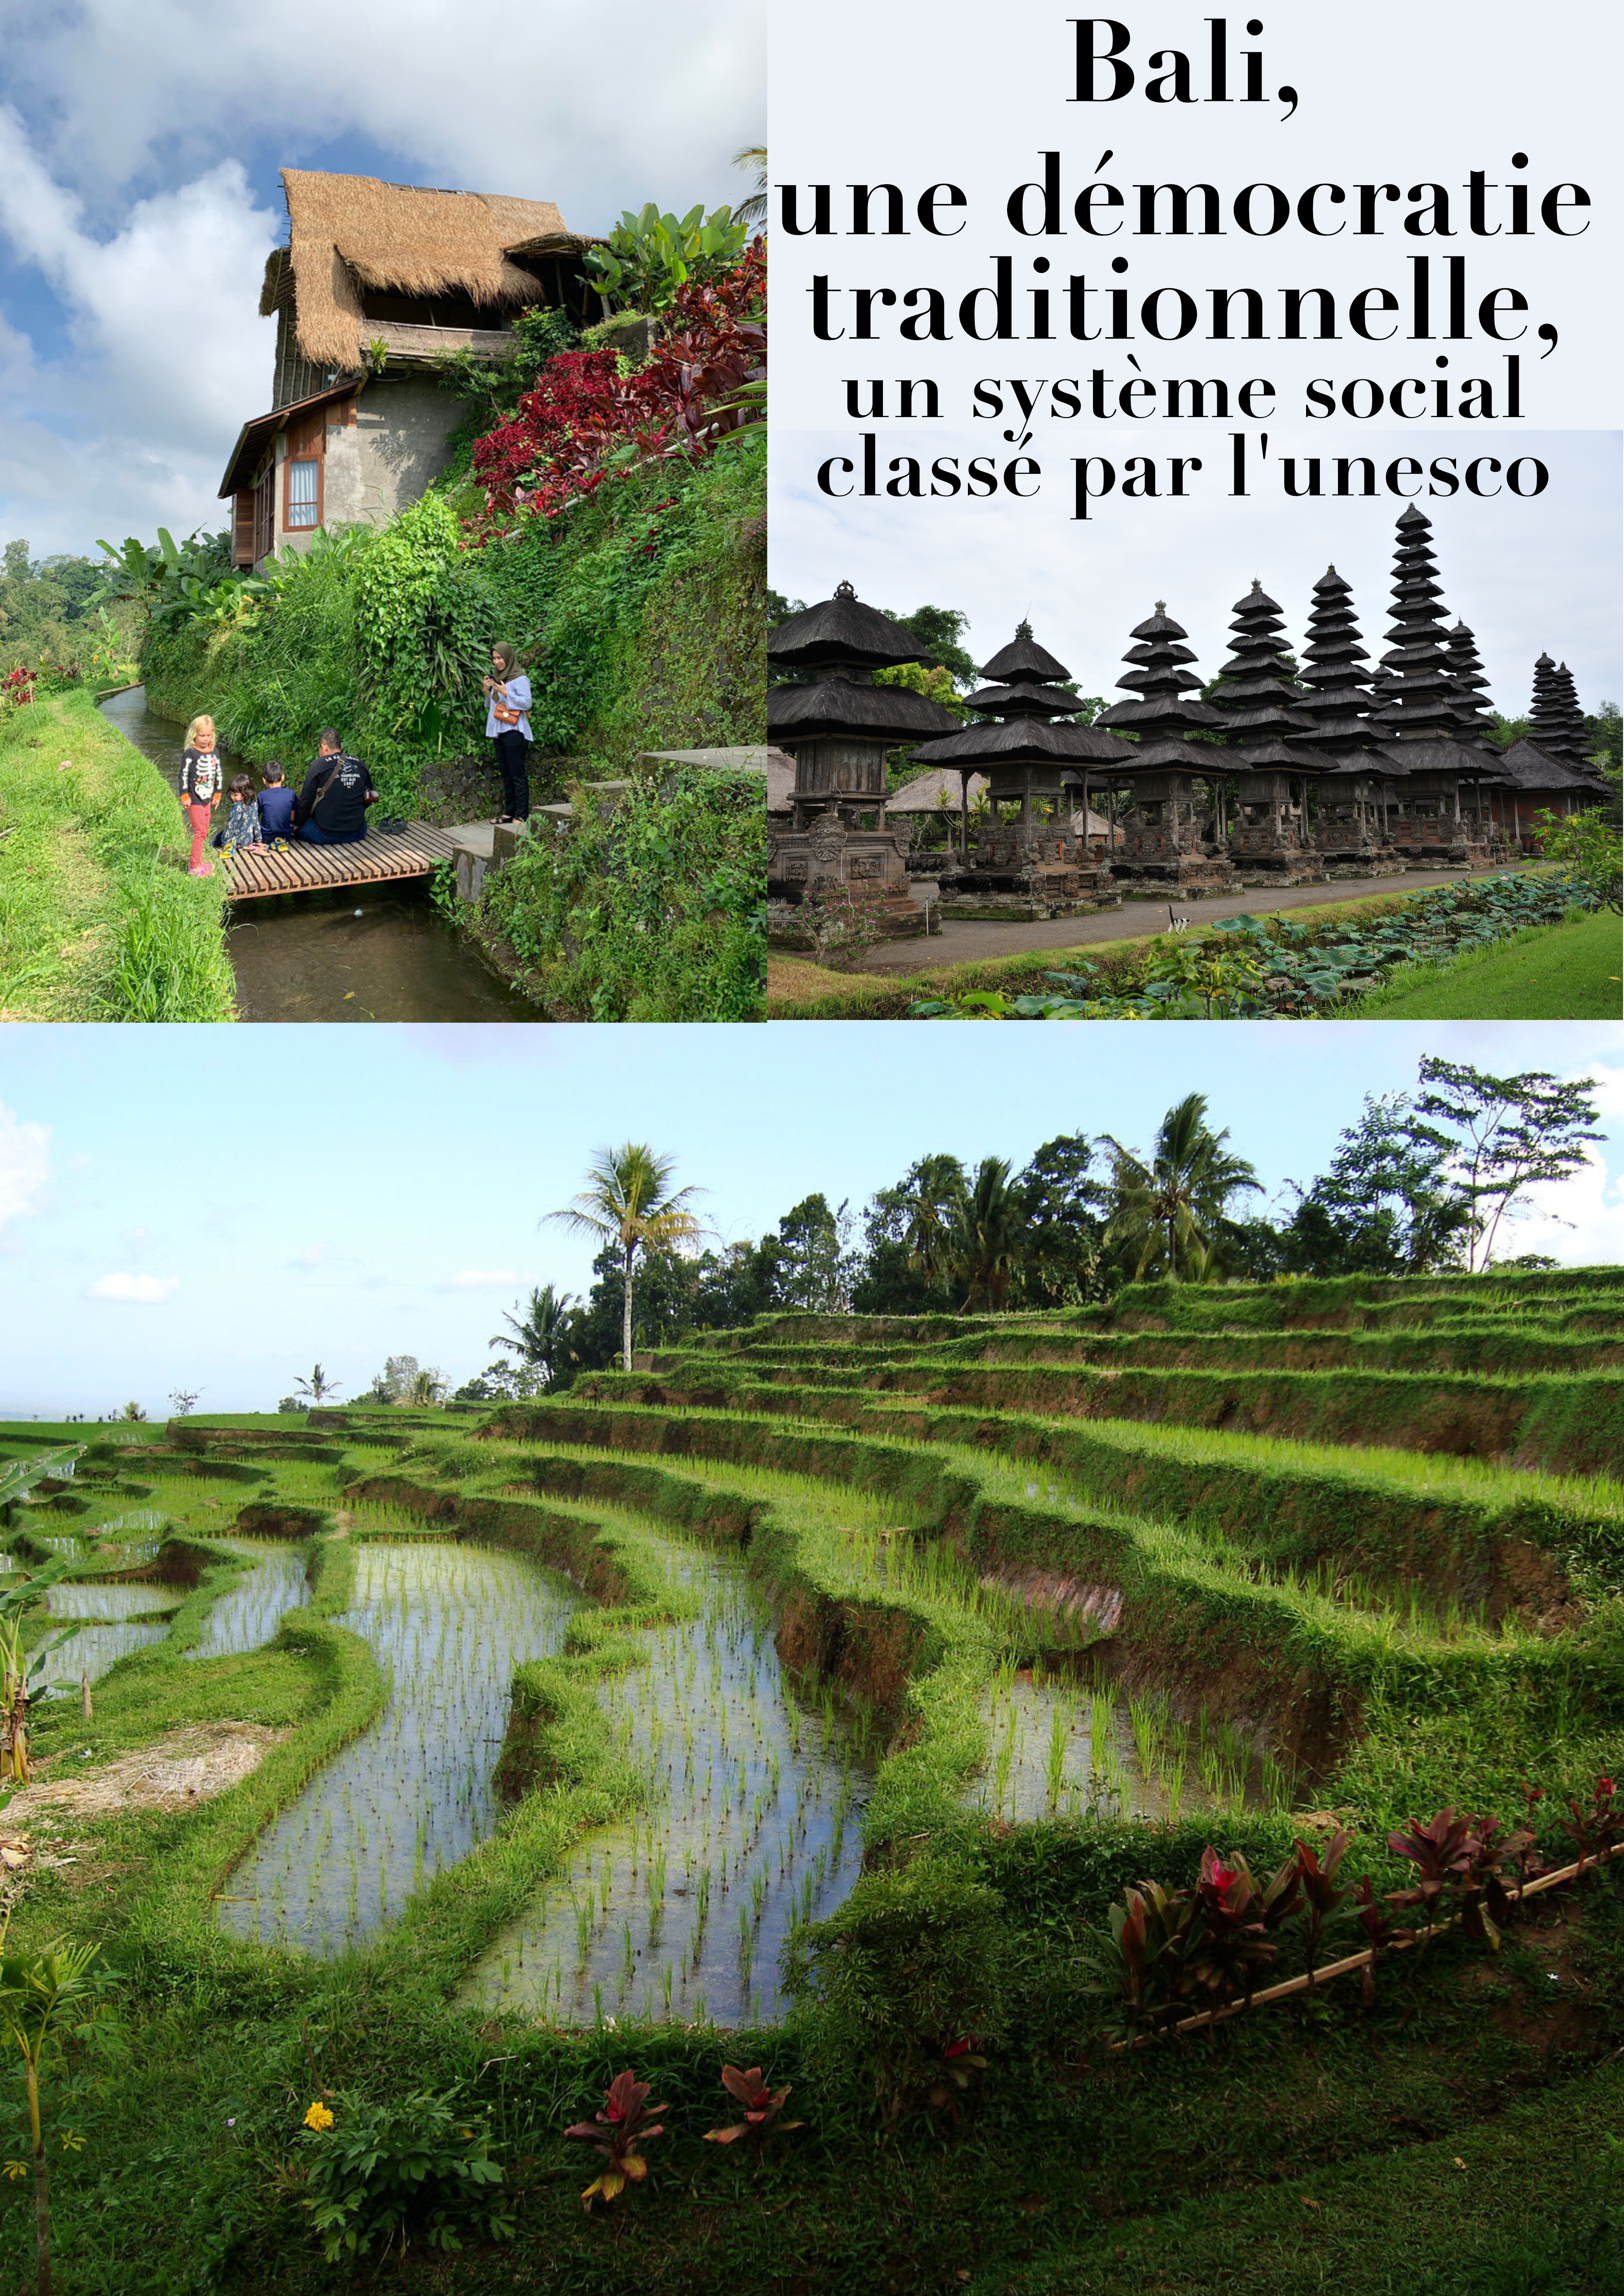 Bali, une démocratie traditionnelle, un système social classé par l’unesco